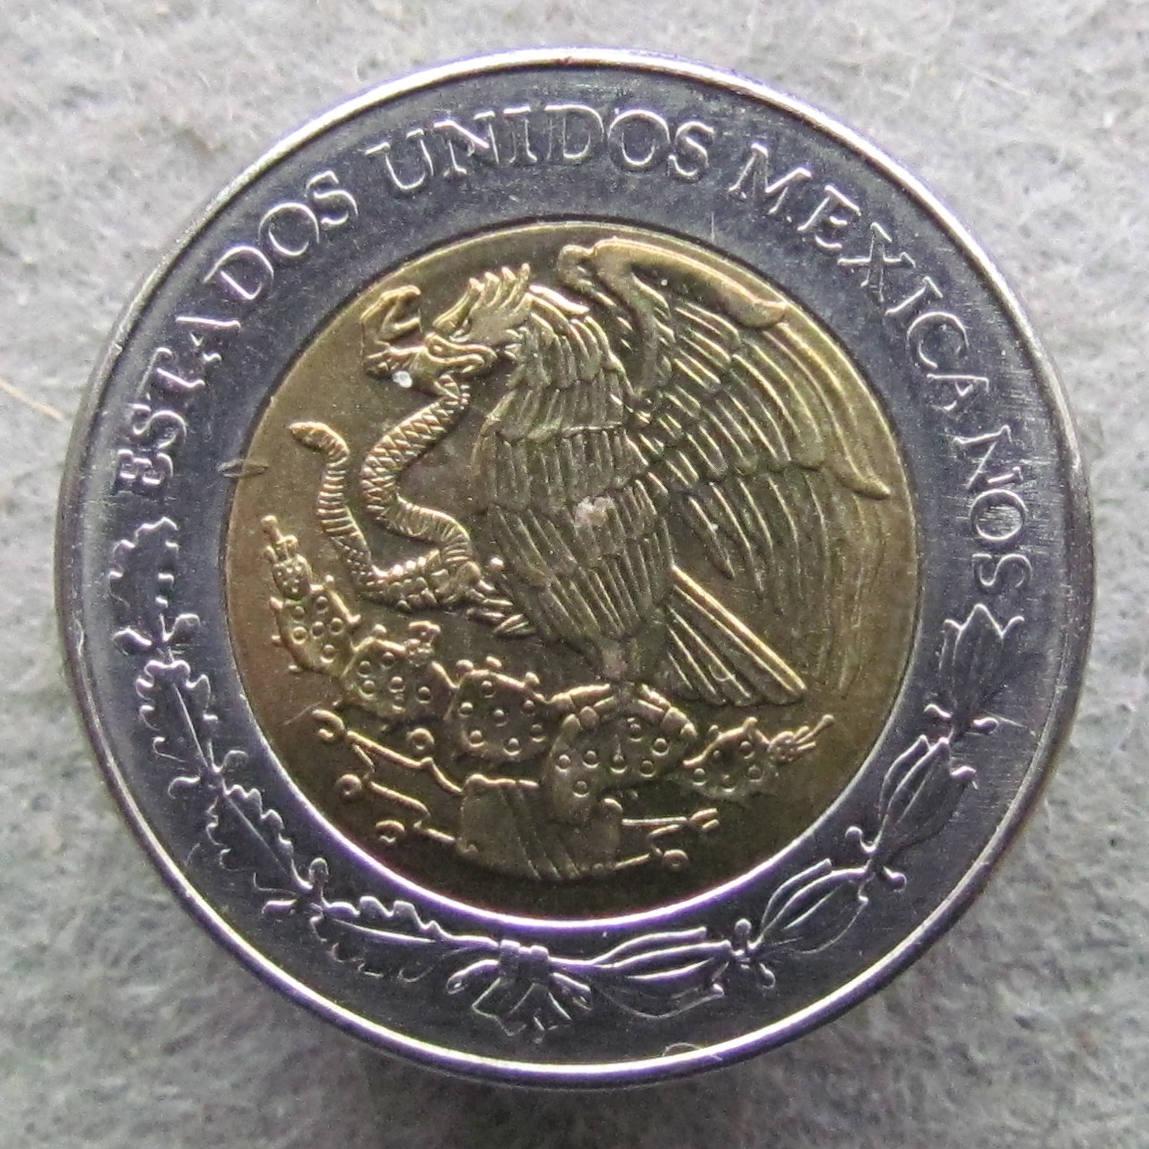 Mexiko 1 peso 1994    - Numismatika